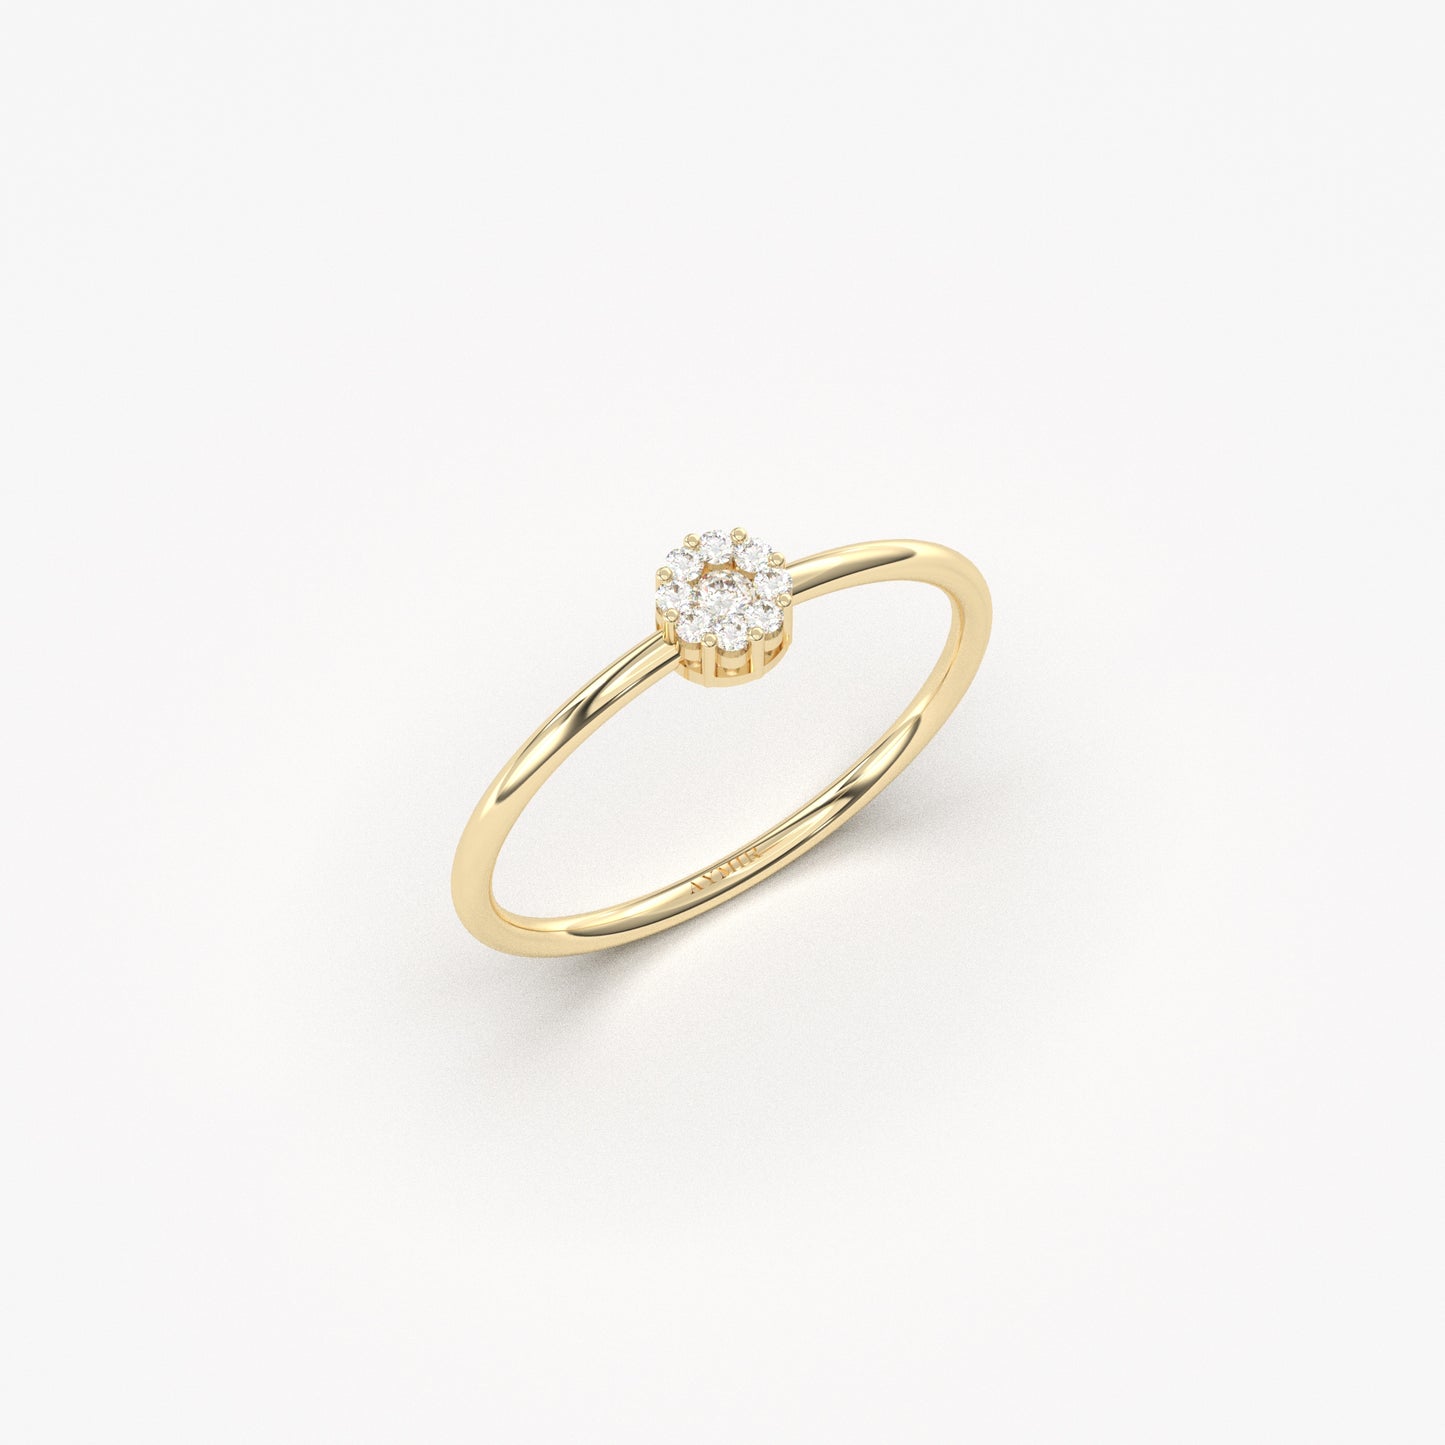 10K Gold Coronet Ring - 2S136